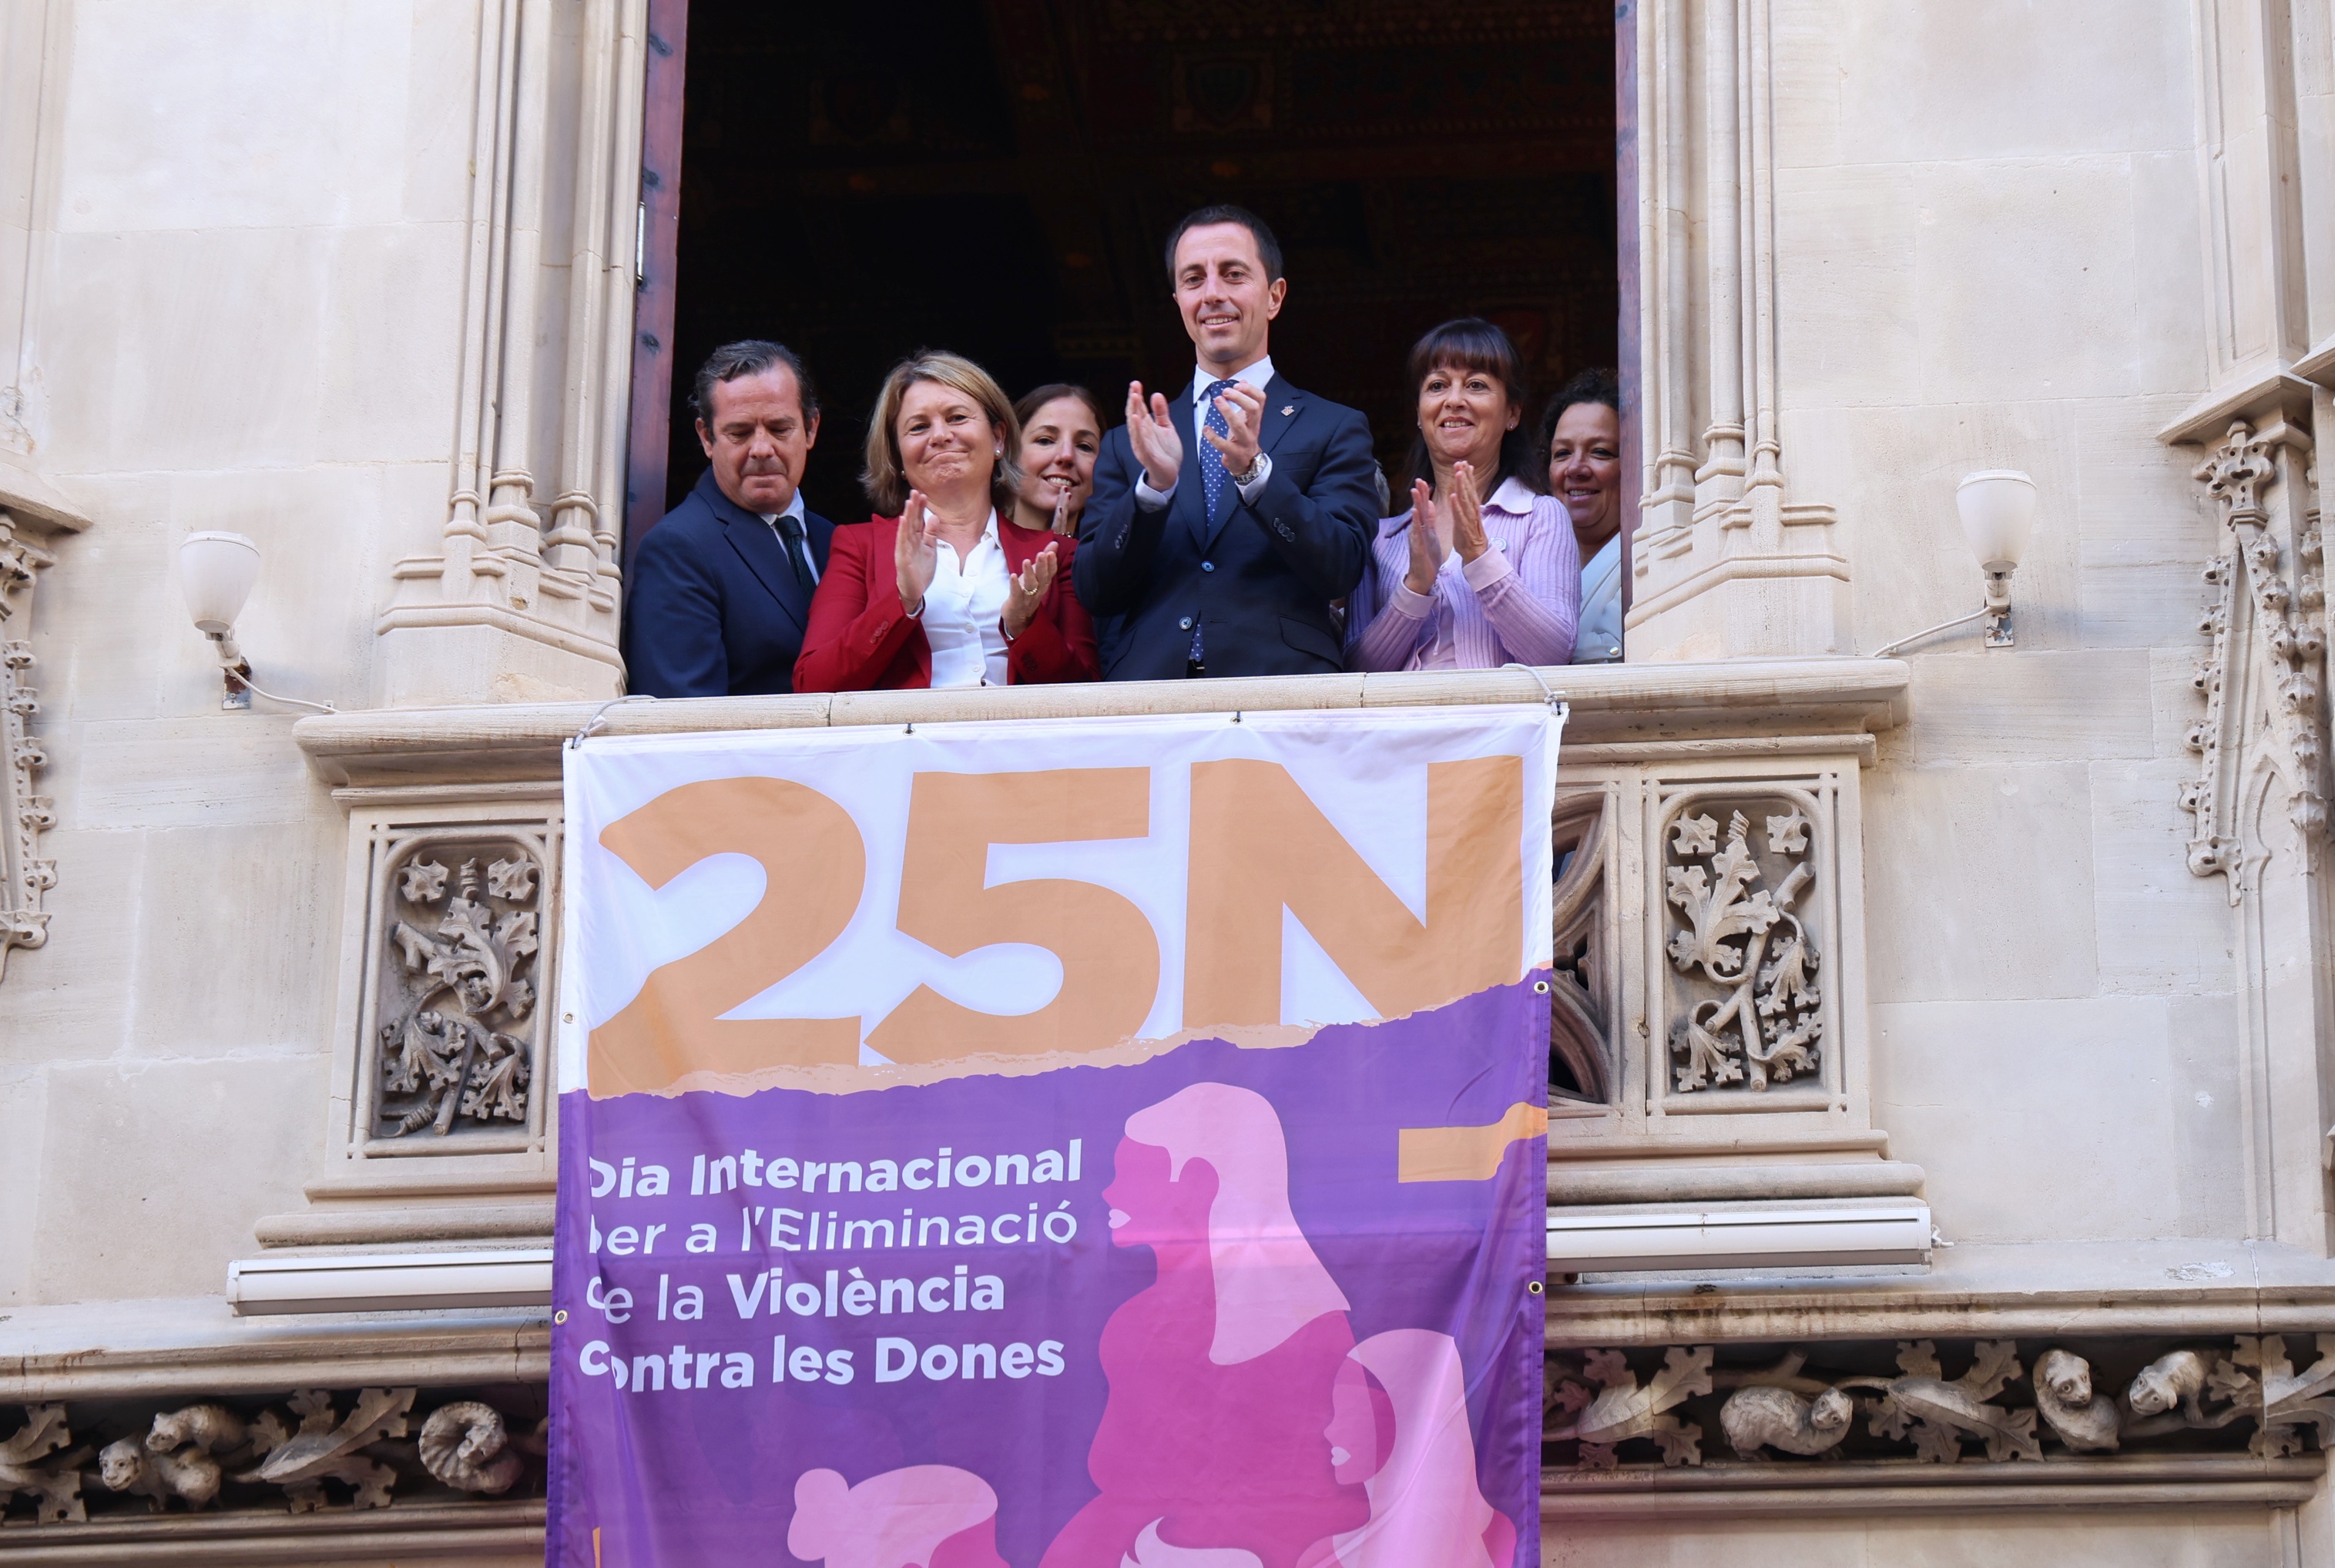 El Consell penja una banderola a la façana del Palau del Consell amb motiu del Dia Internacional per a l’Eliminació de la Violència contra les Dones.